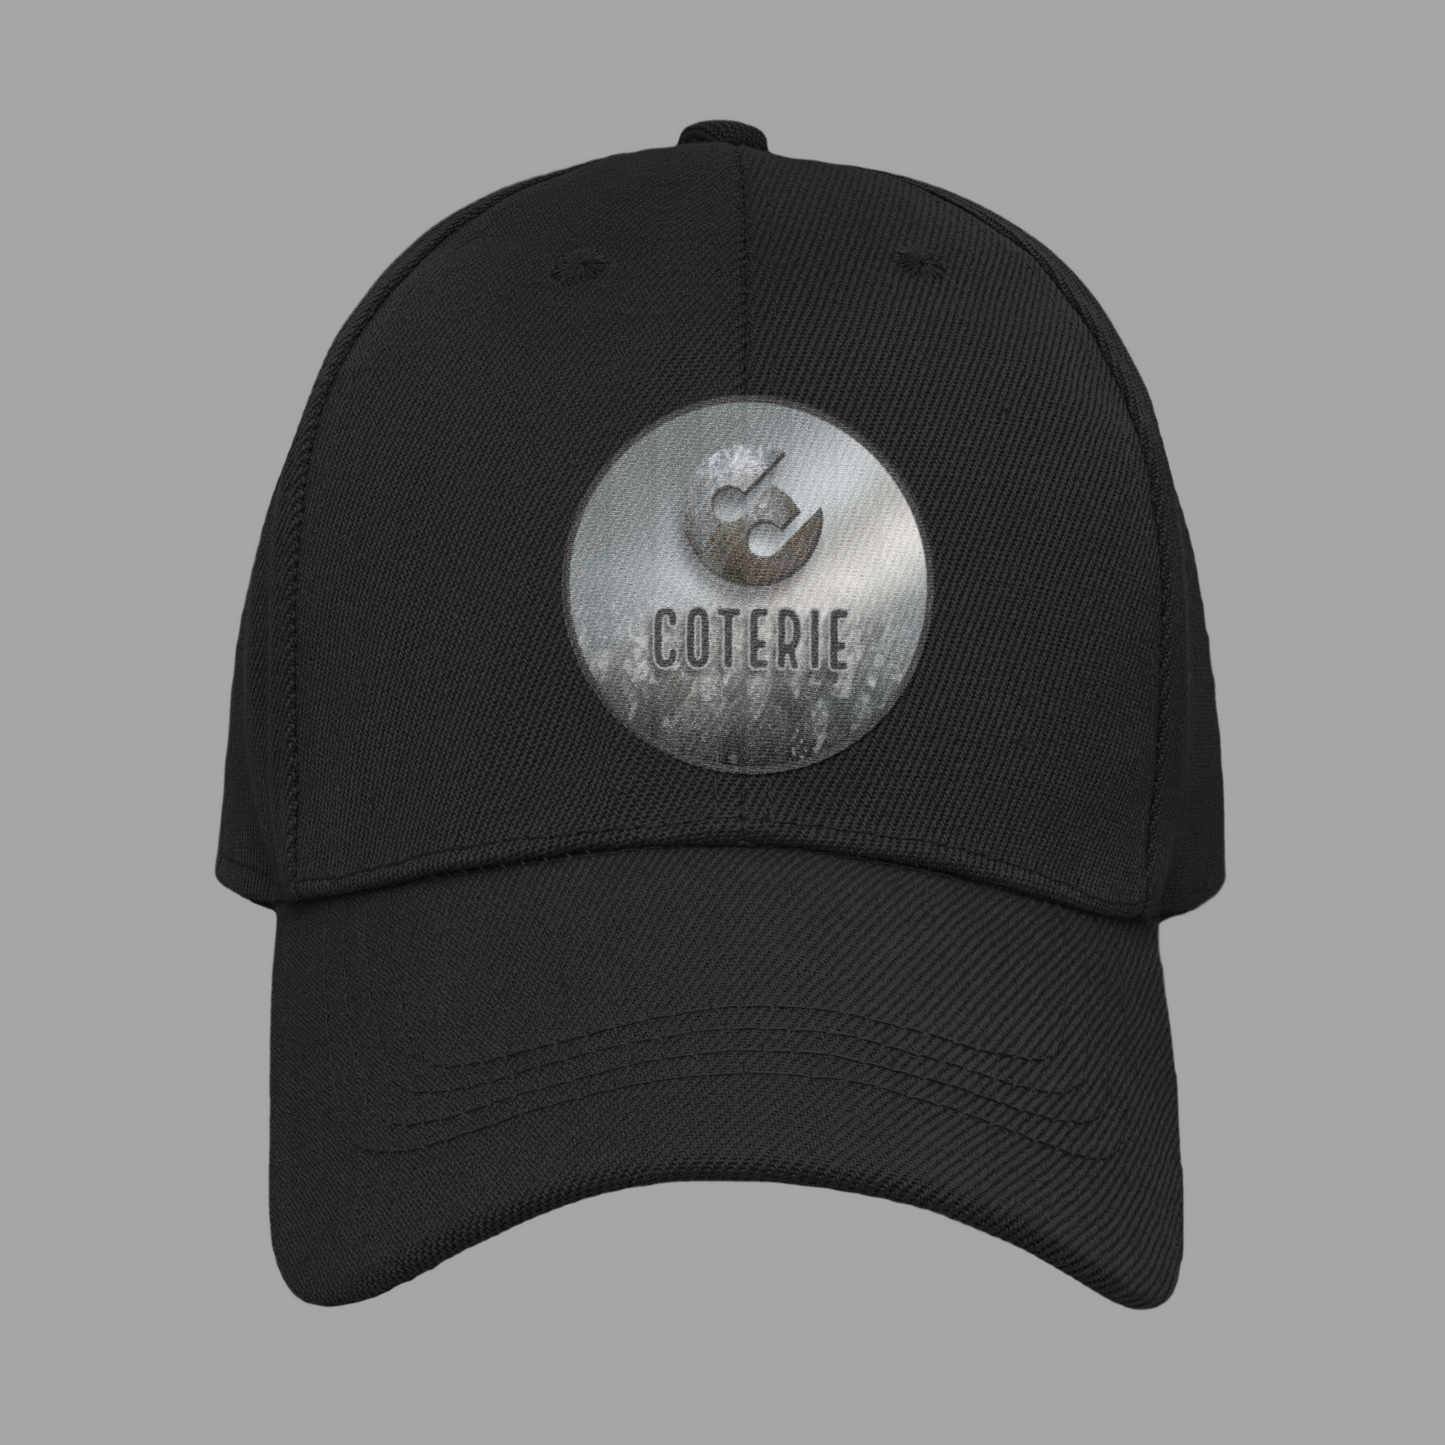 Coterie- Black Hat